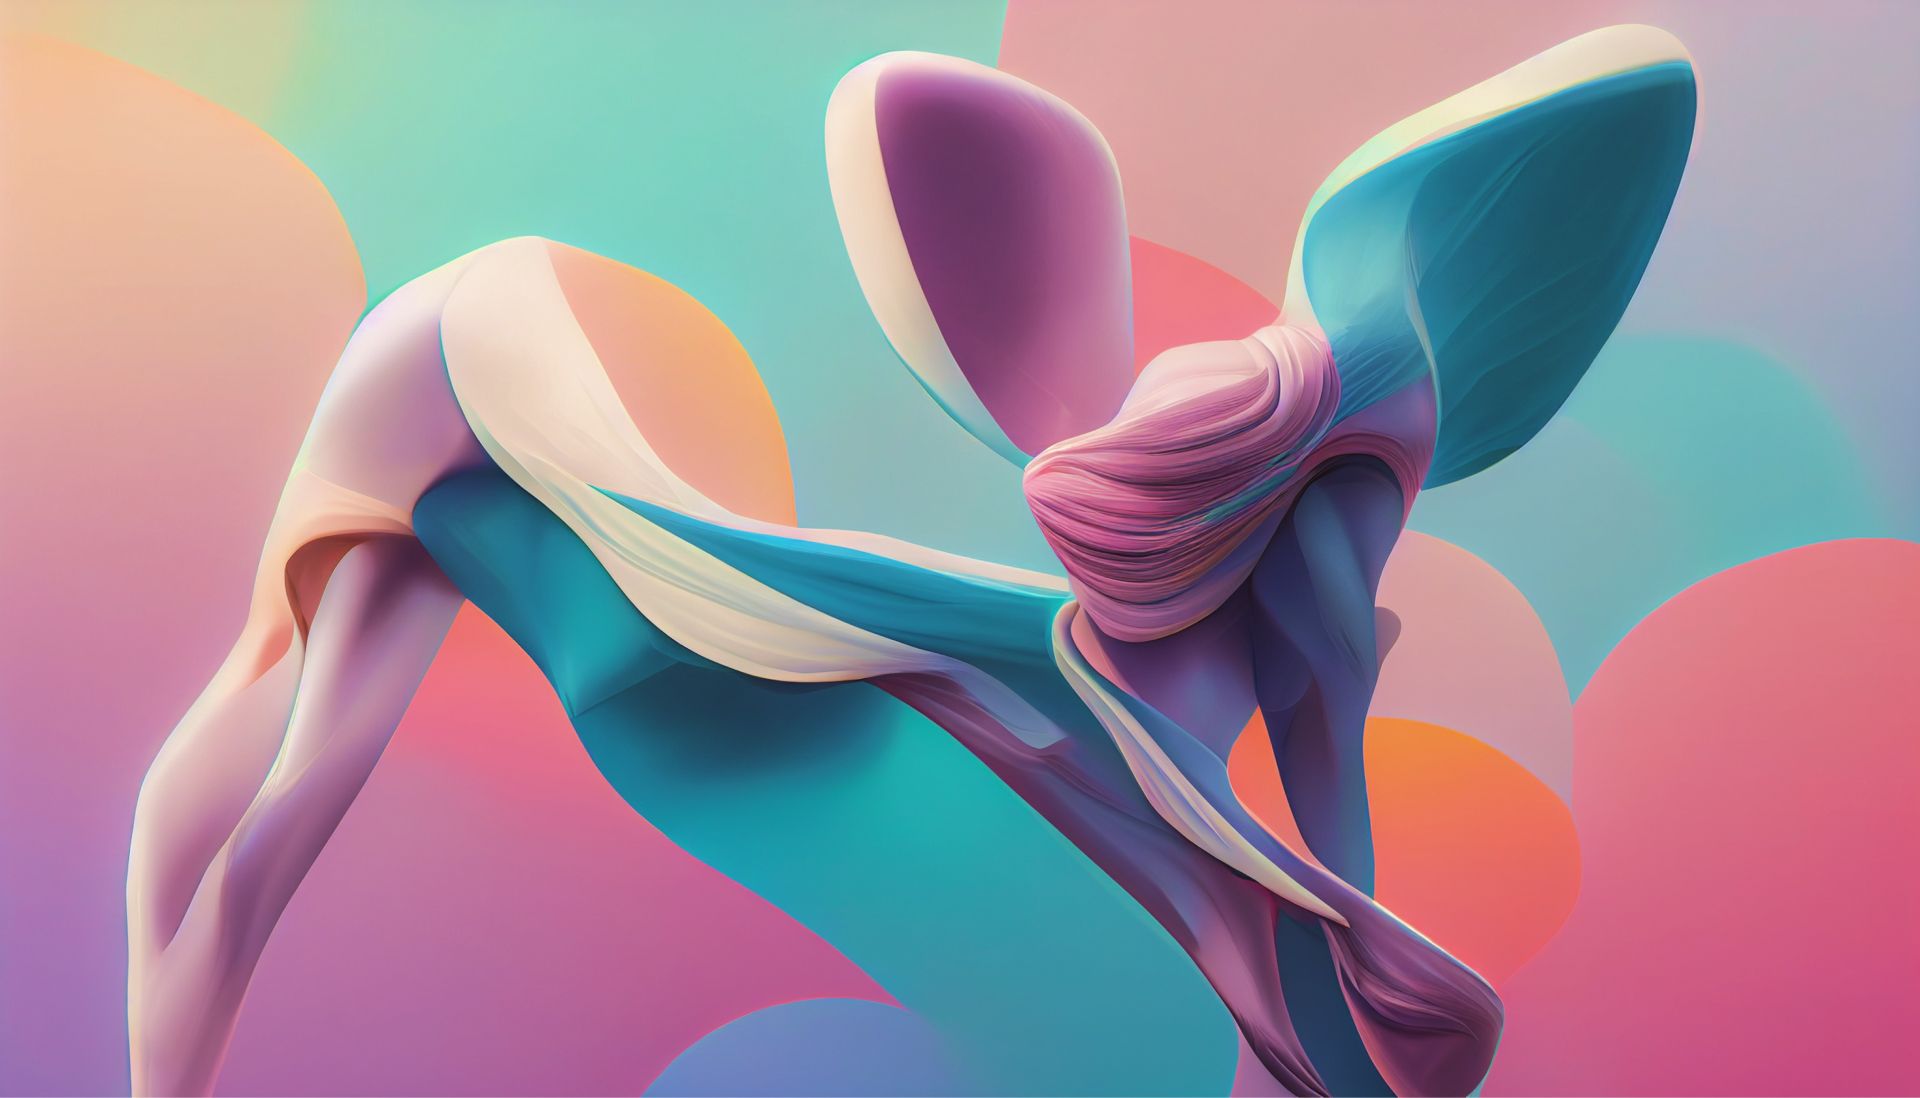 Abstract ballerina artwork